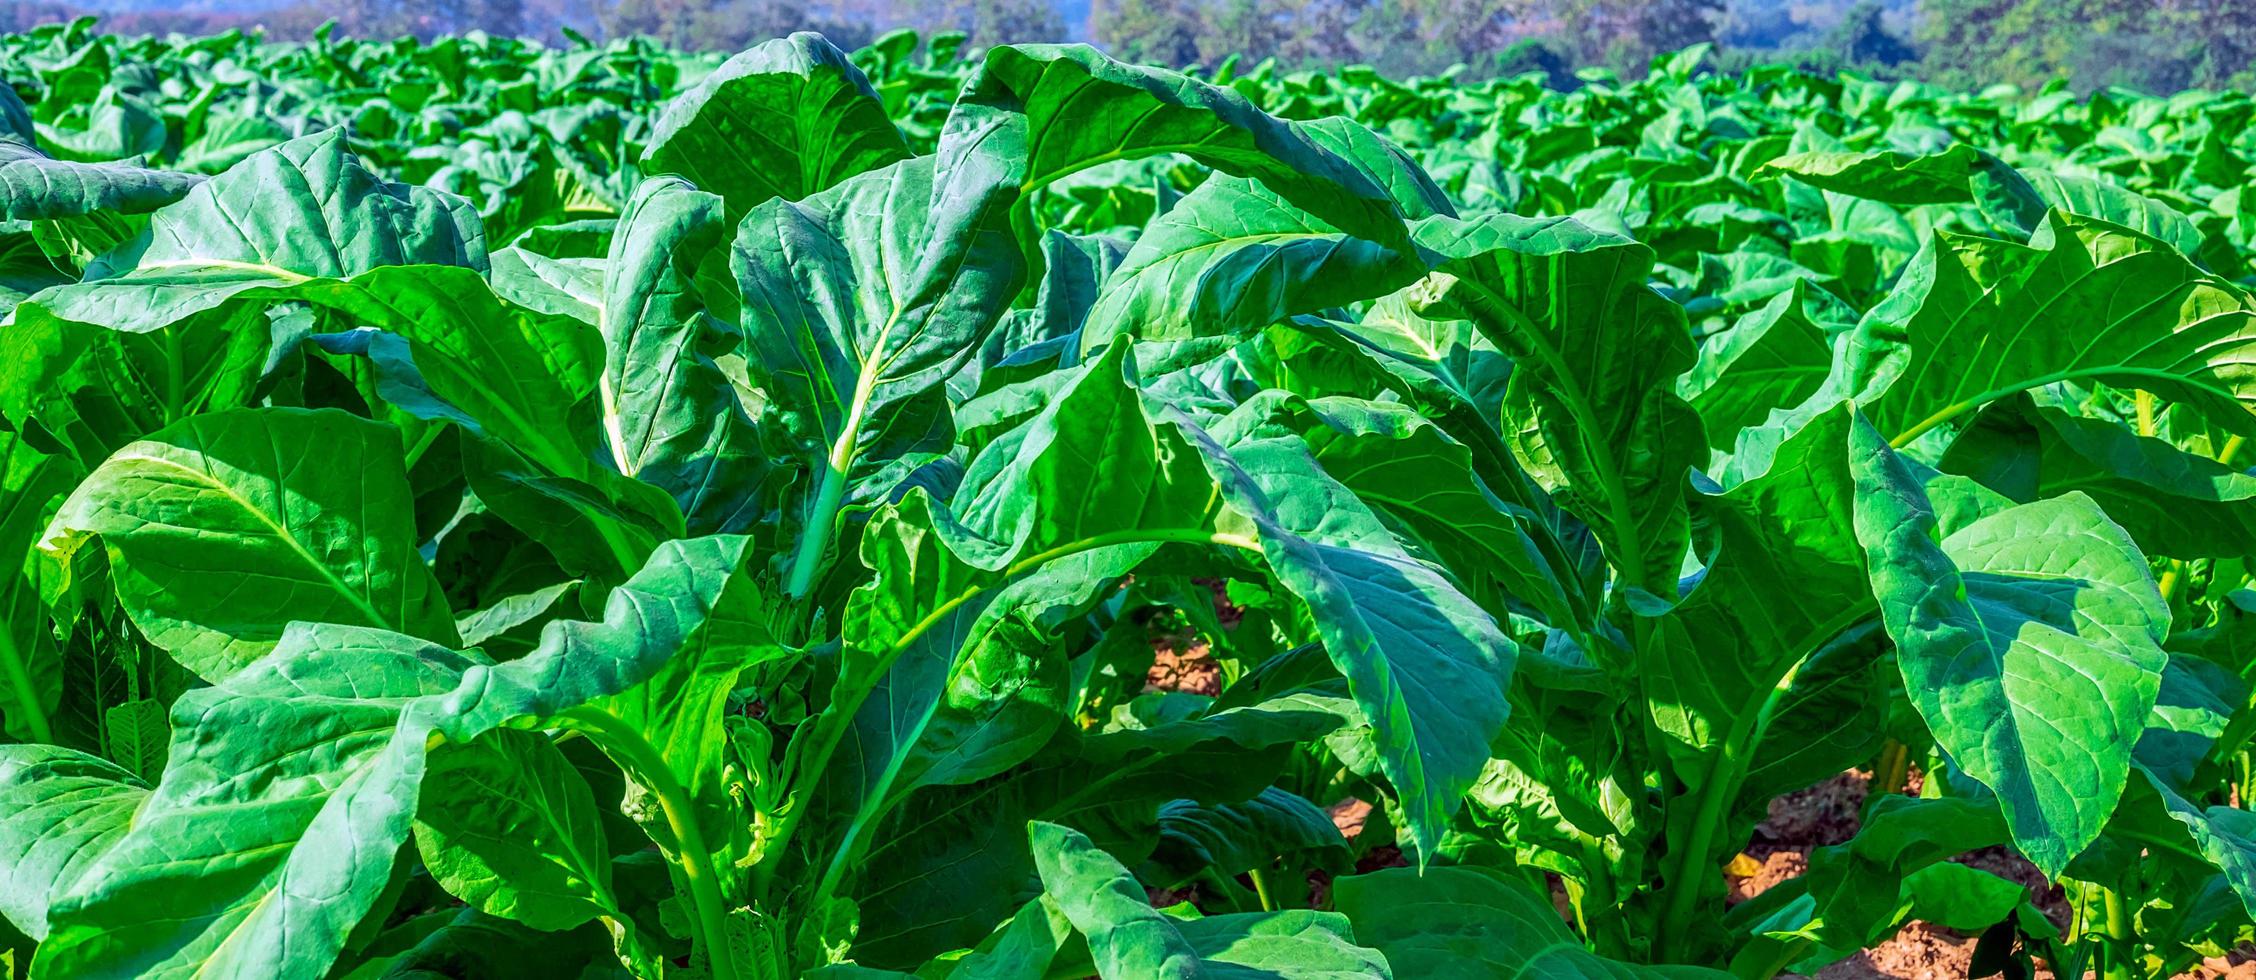 gros plan sur des cultures de grandes feuilles de tabac poussant dans un champ de plantation de tabac. fond de feuilles vertes de tabac tropical photo